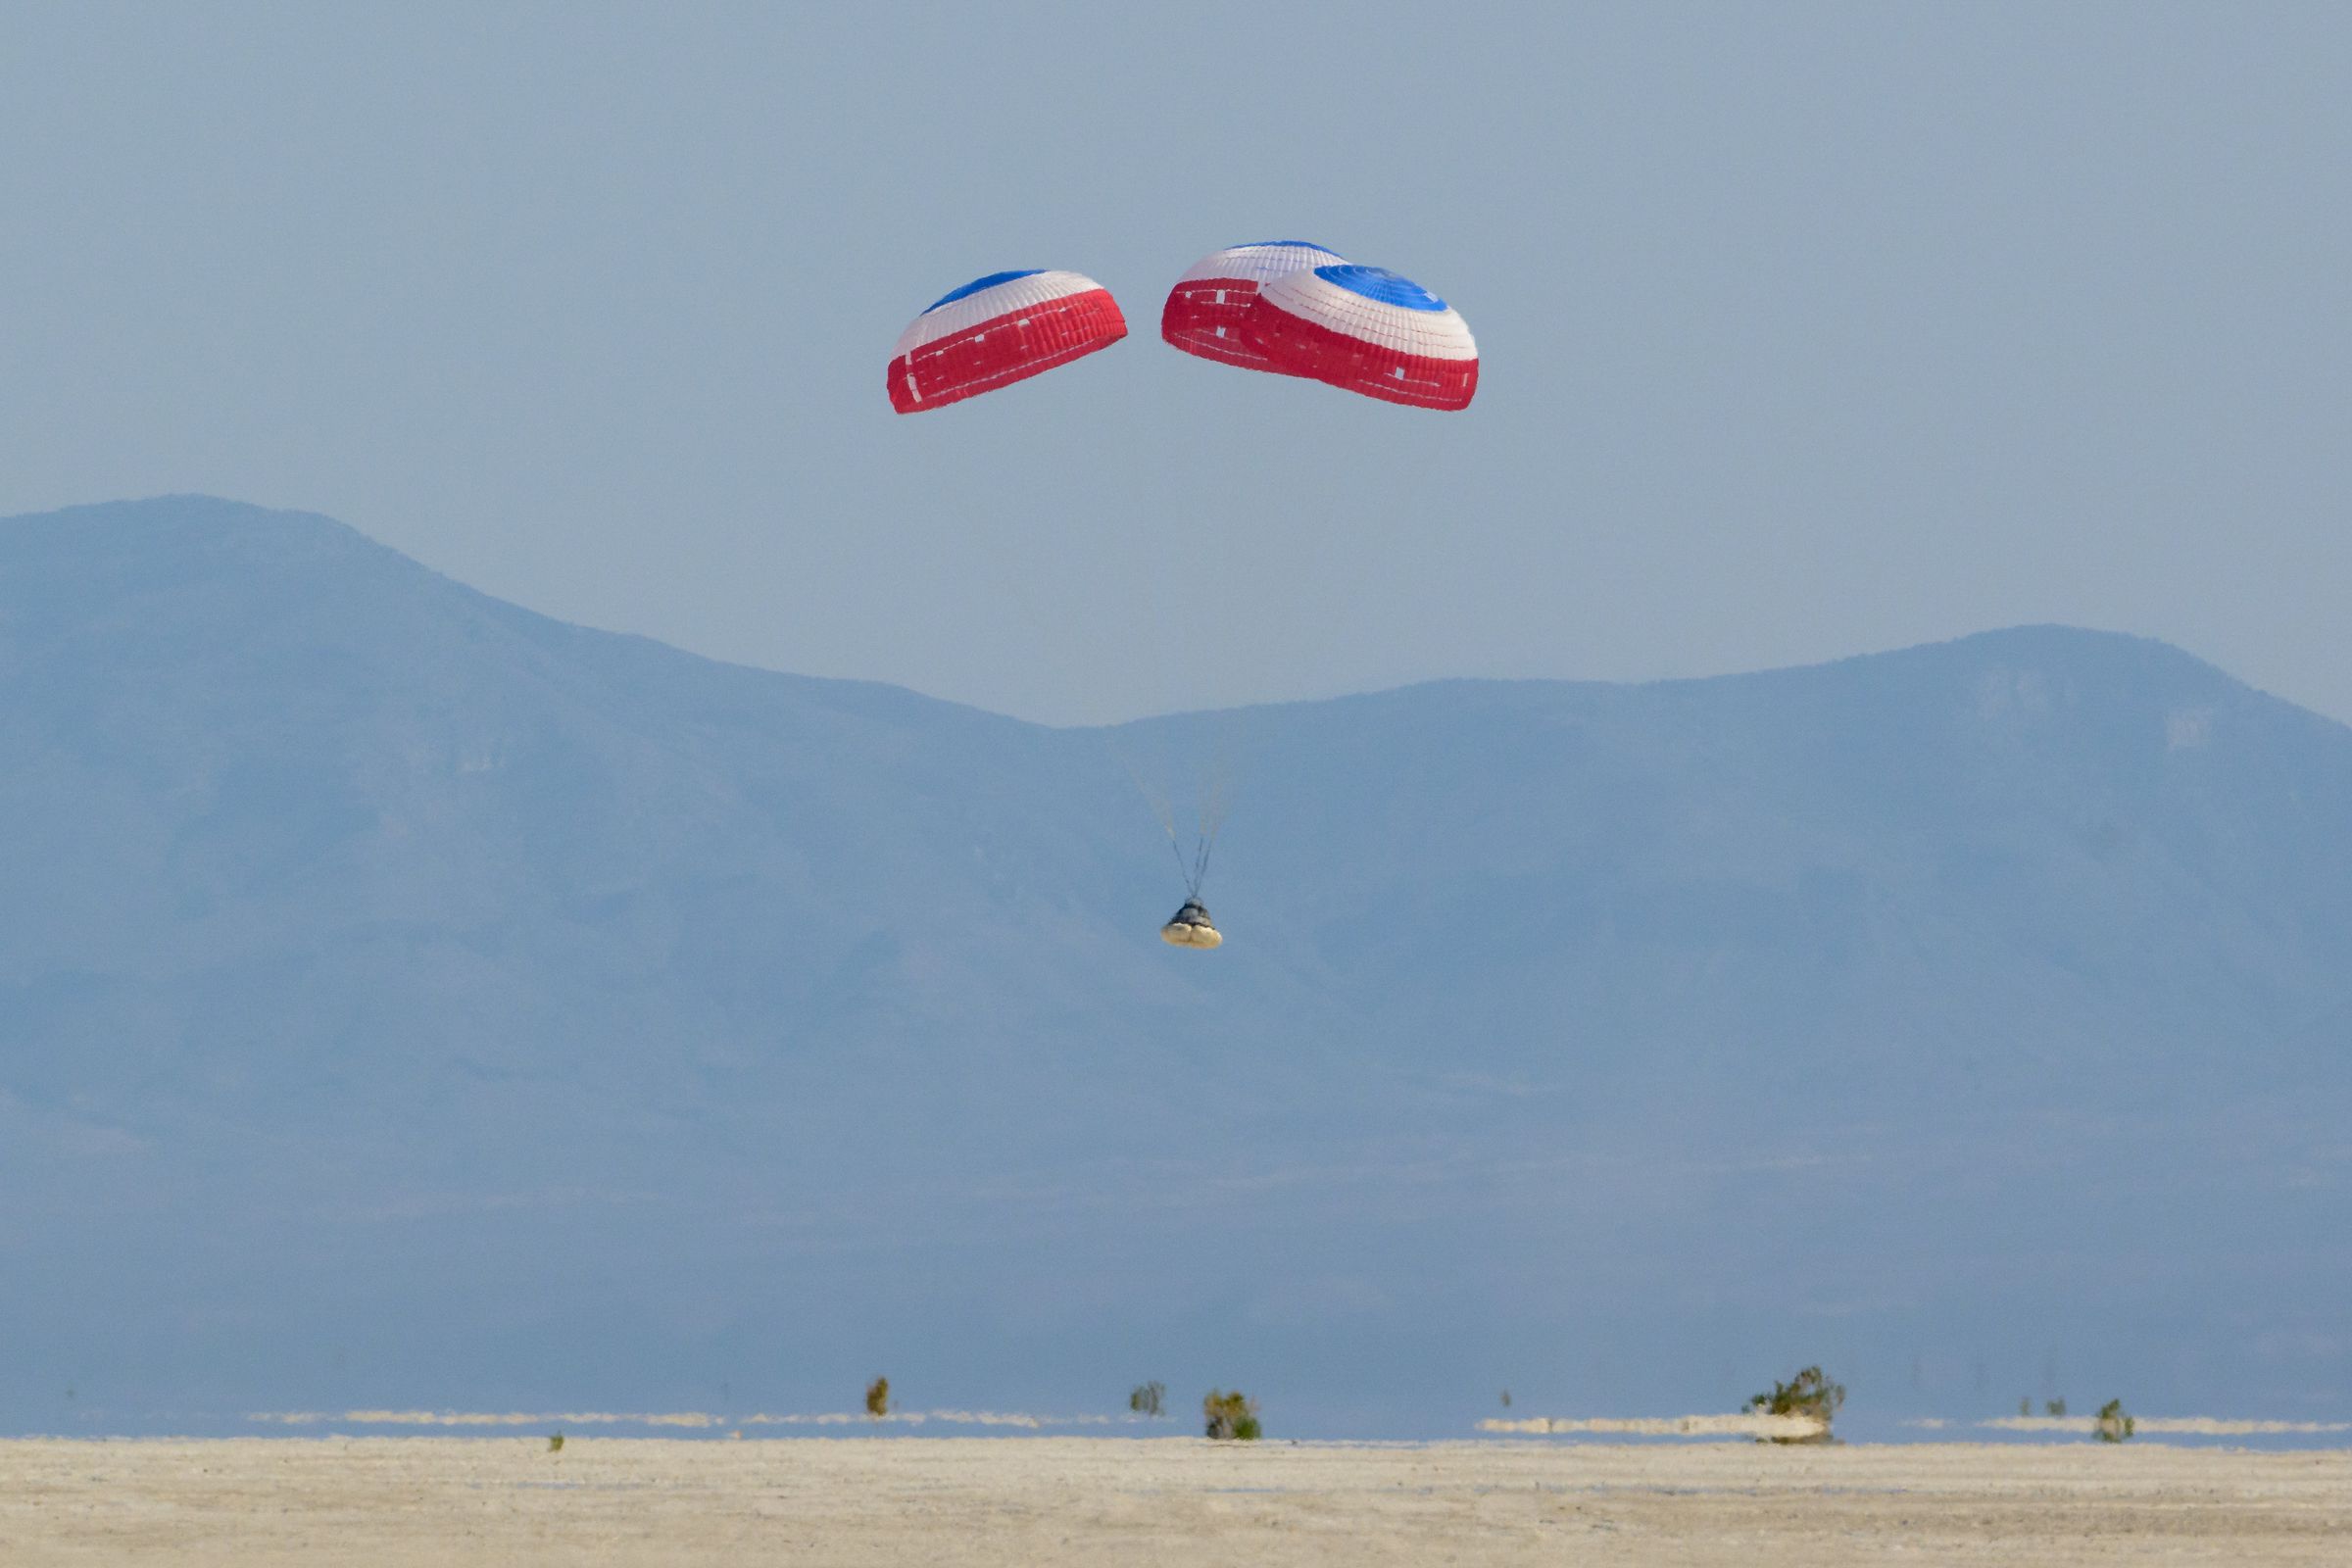 Boeing’s Starliner spacecraft landing under parachutes in the New Mexico desert